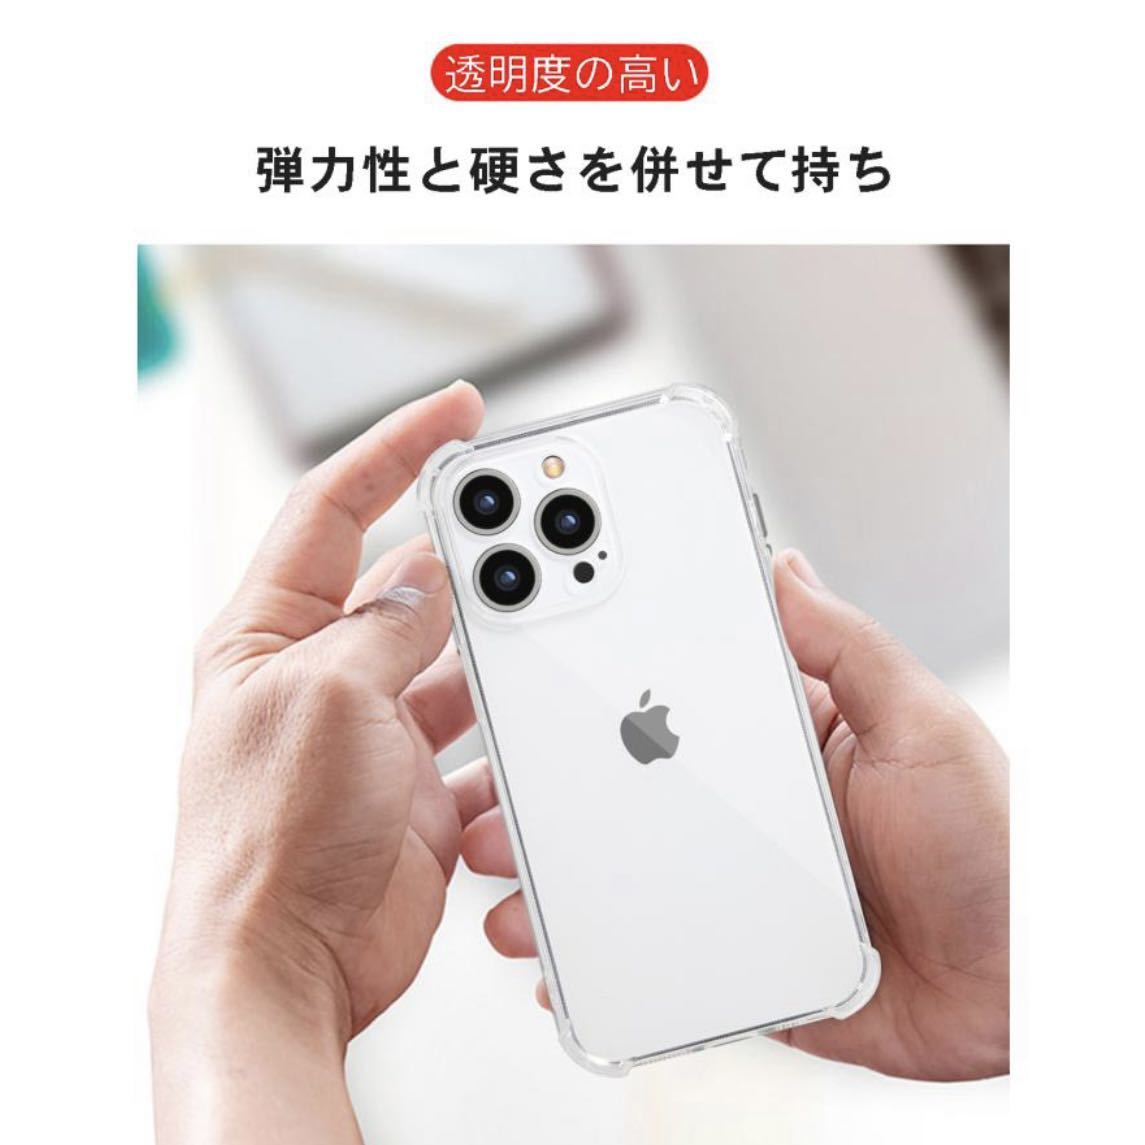 IPhone12 Pro Maxケース アイホン12プロマックスケース Allクリア 耐衝撃_画像3